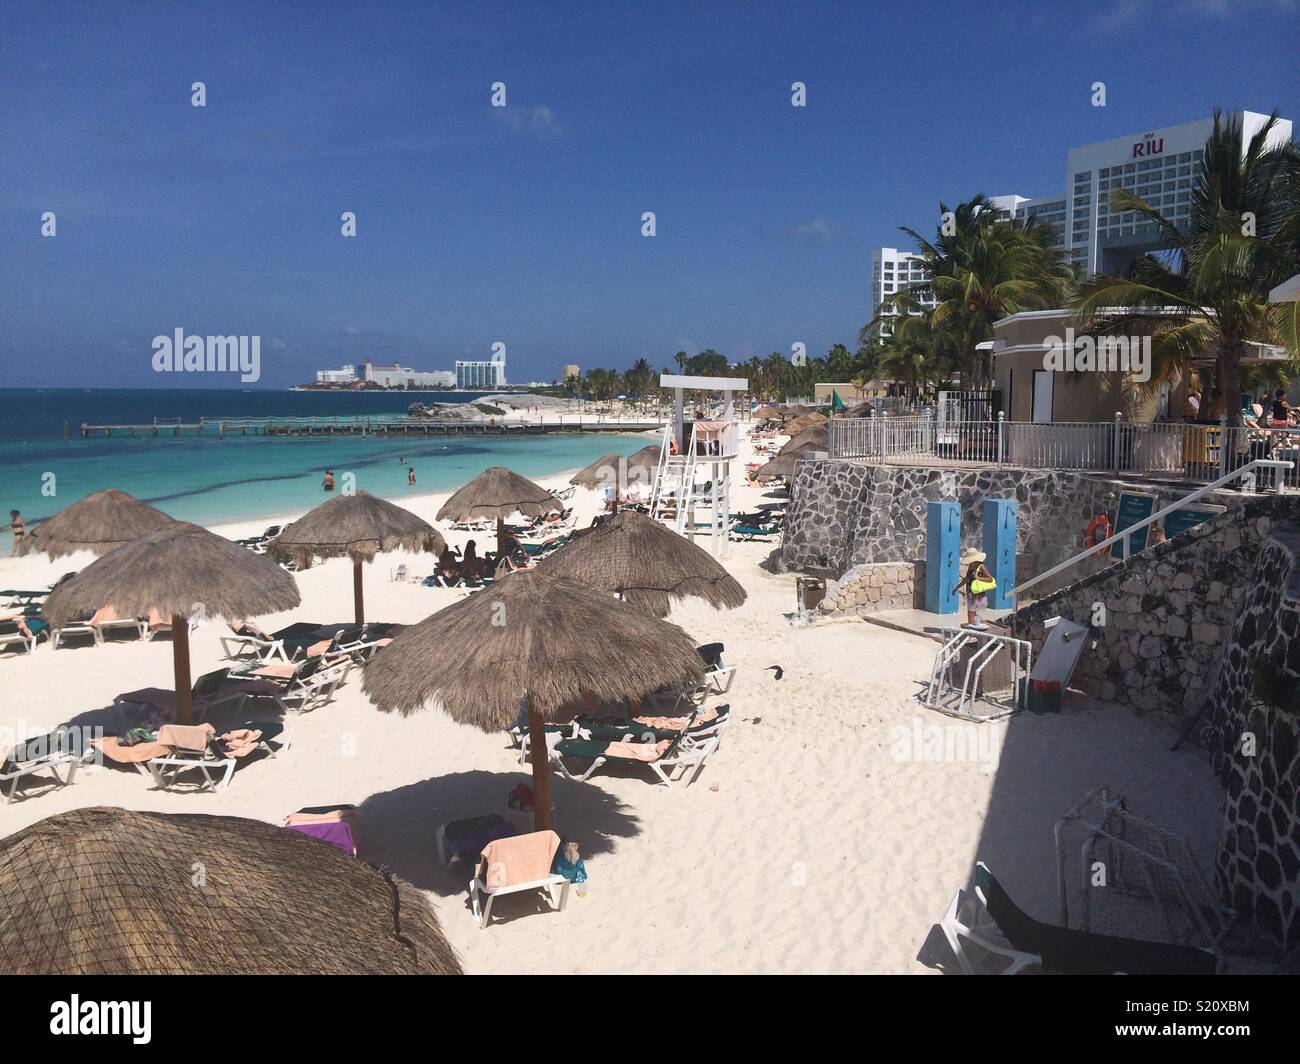 Foto der nördlichen Cancun Hotel Streifen Strand am Riu Hotel. Der weiche, weiße Sand, das kristallklare Wasser des Meeres machen dies zu einem wunderschönen Urlaubsort. Stockfoto